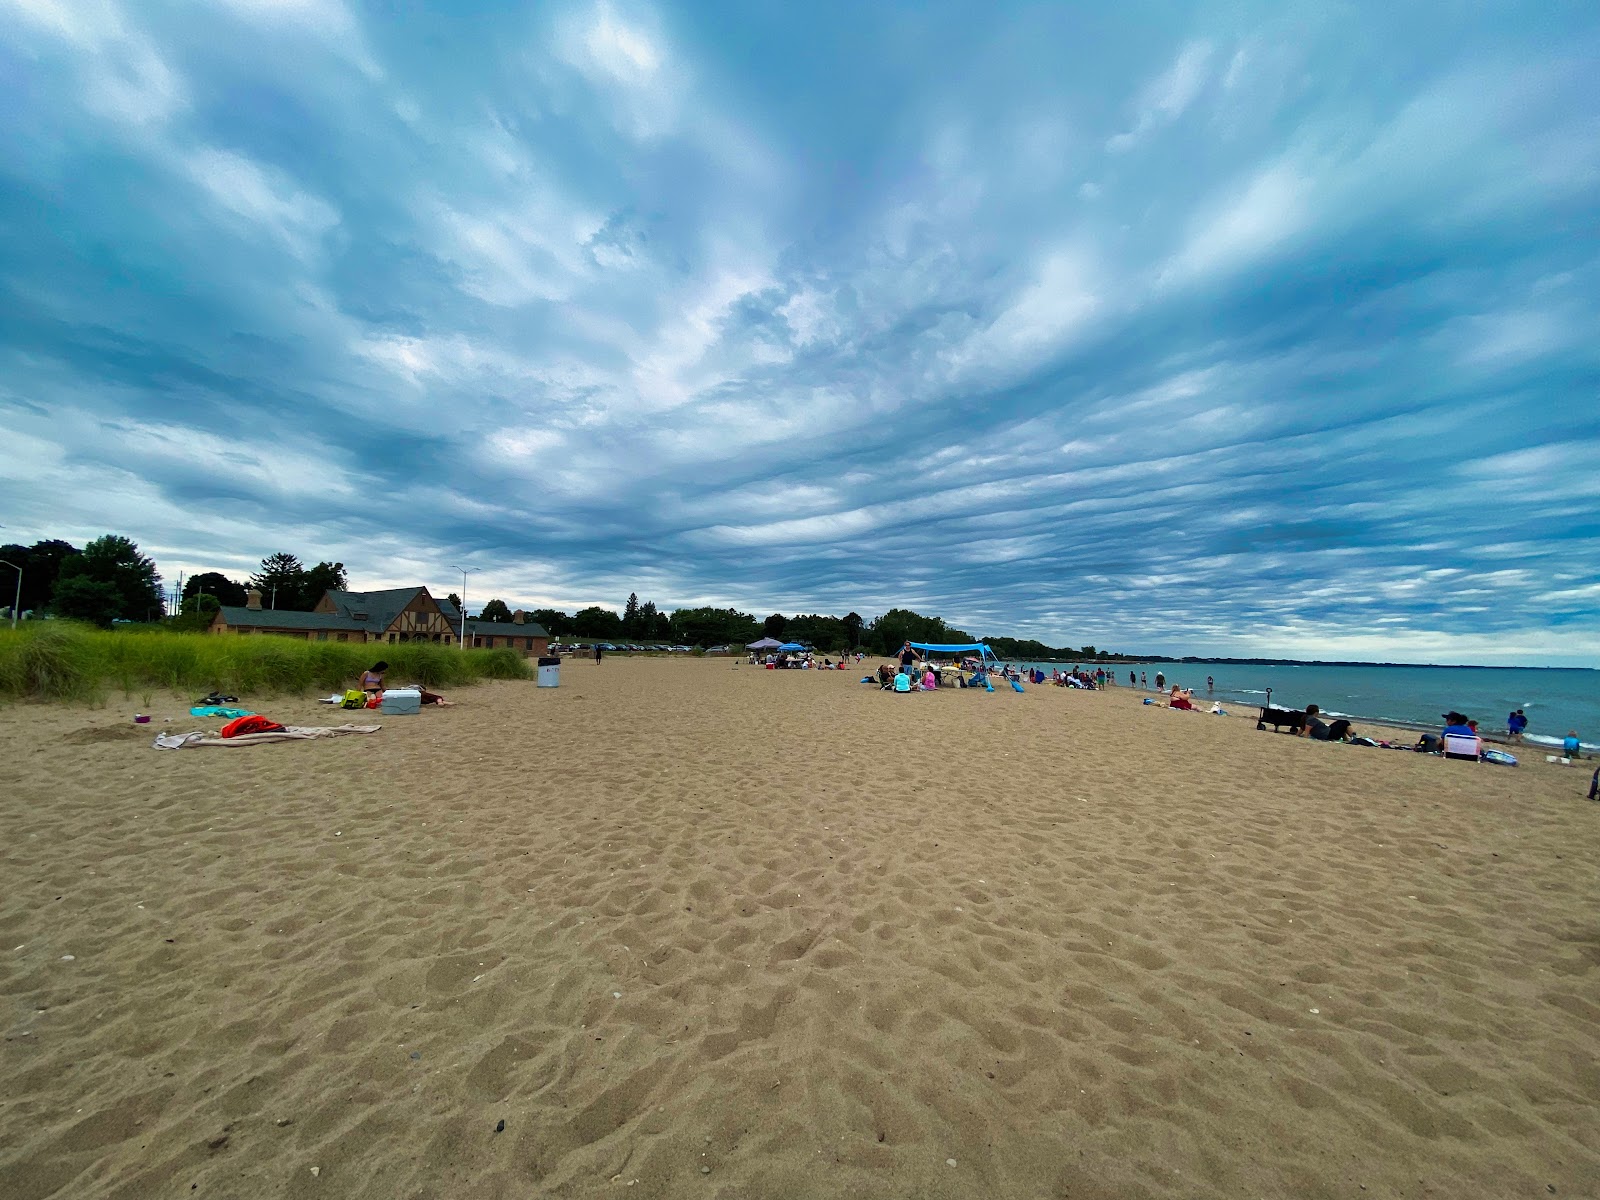 Fotografie cu Simmons Island Beach - locul popular printre cunoscătorii de relaxare